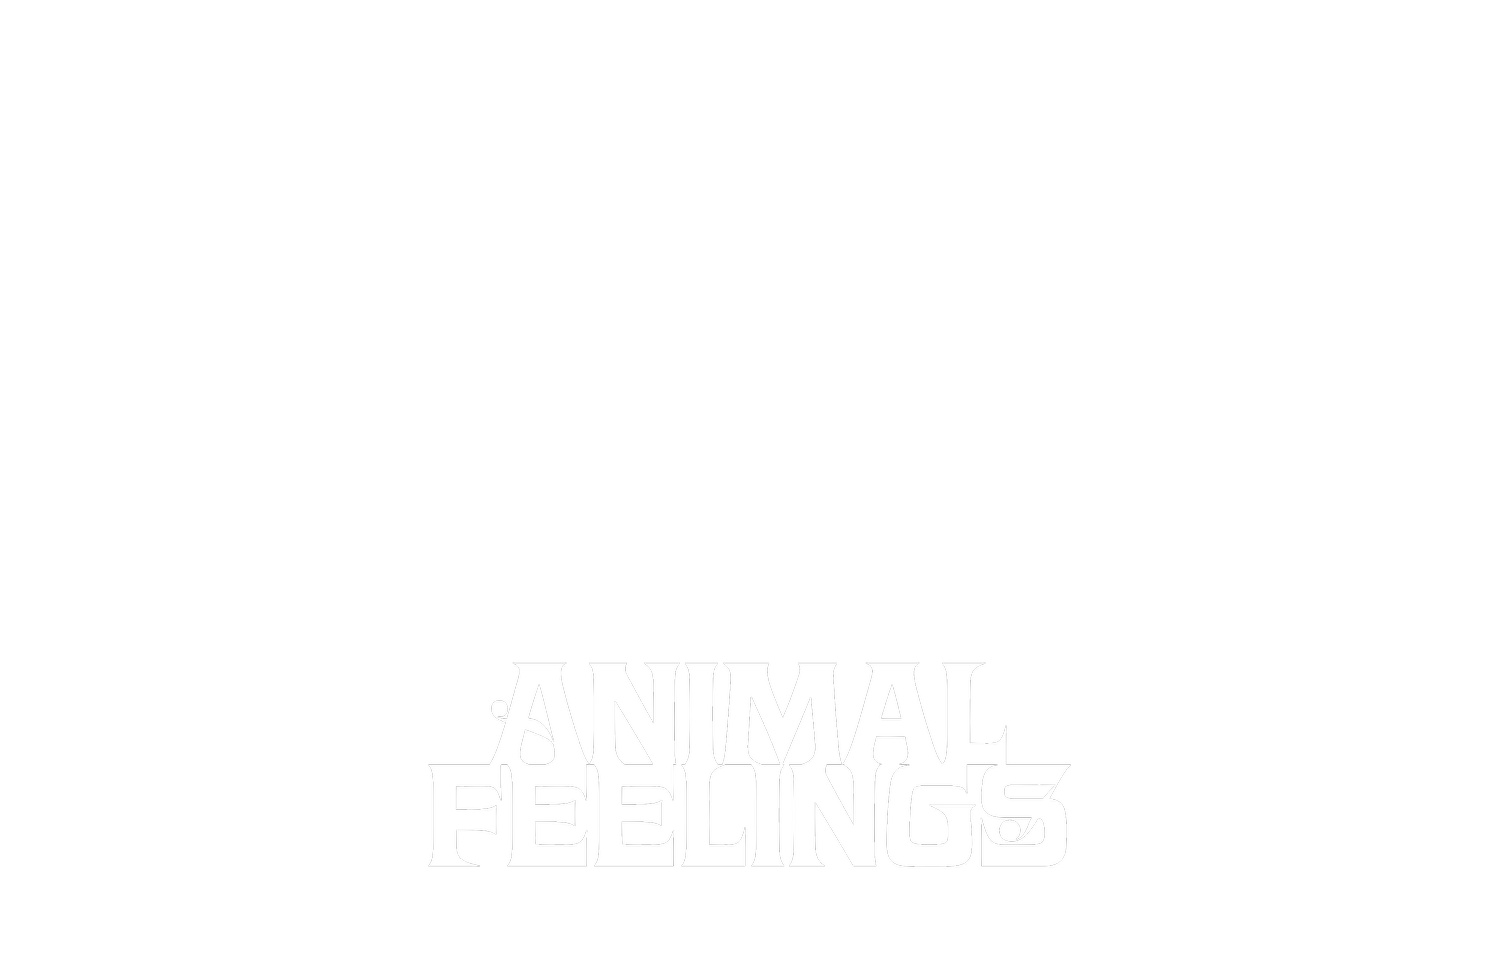 ANIMAL FEELINGS